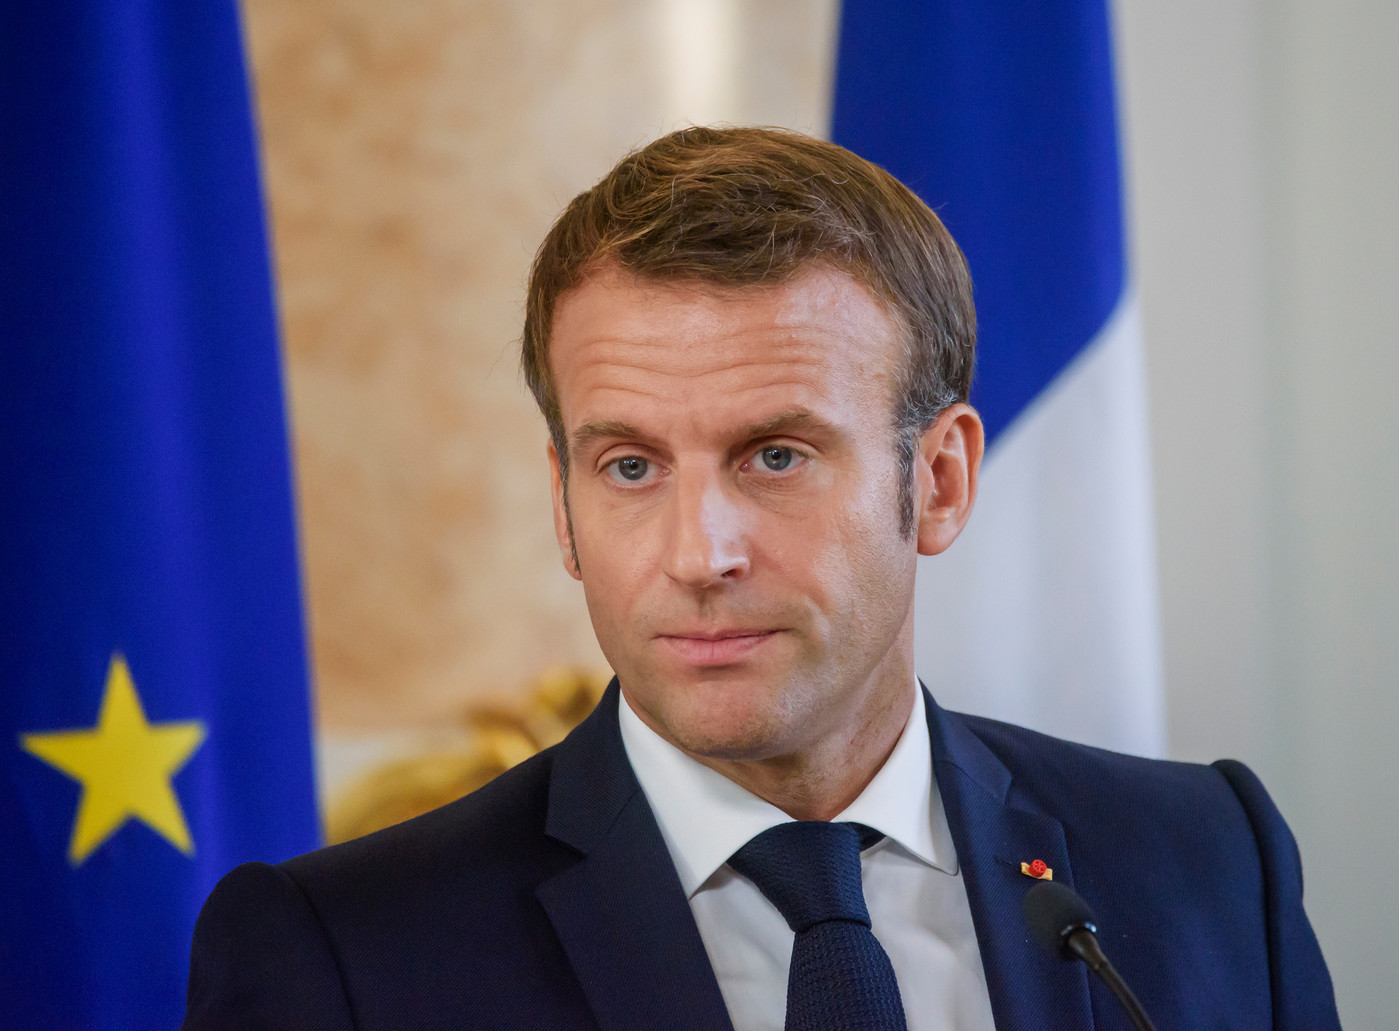 France : Emmanuel Macron invité de TF1 et France 2 mercredi soir